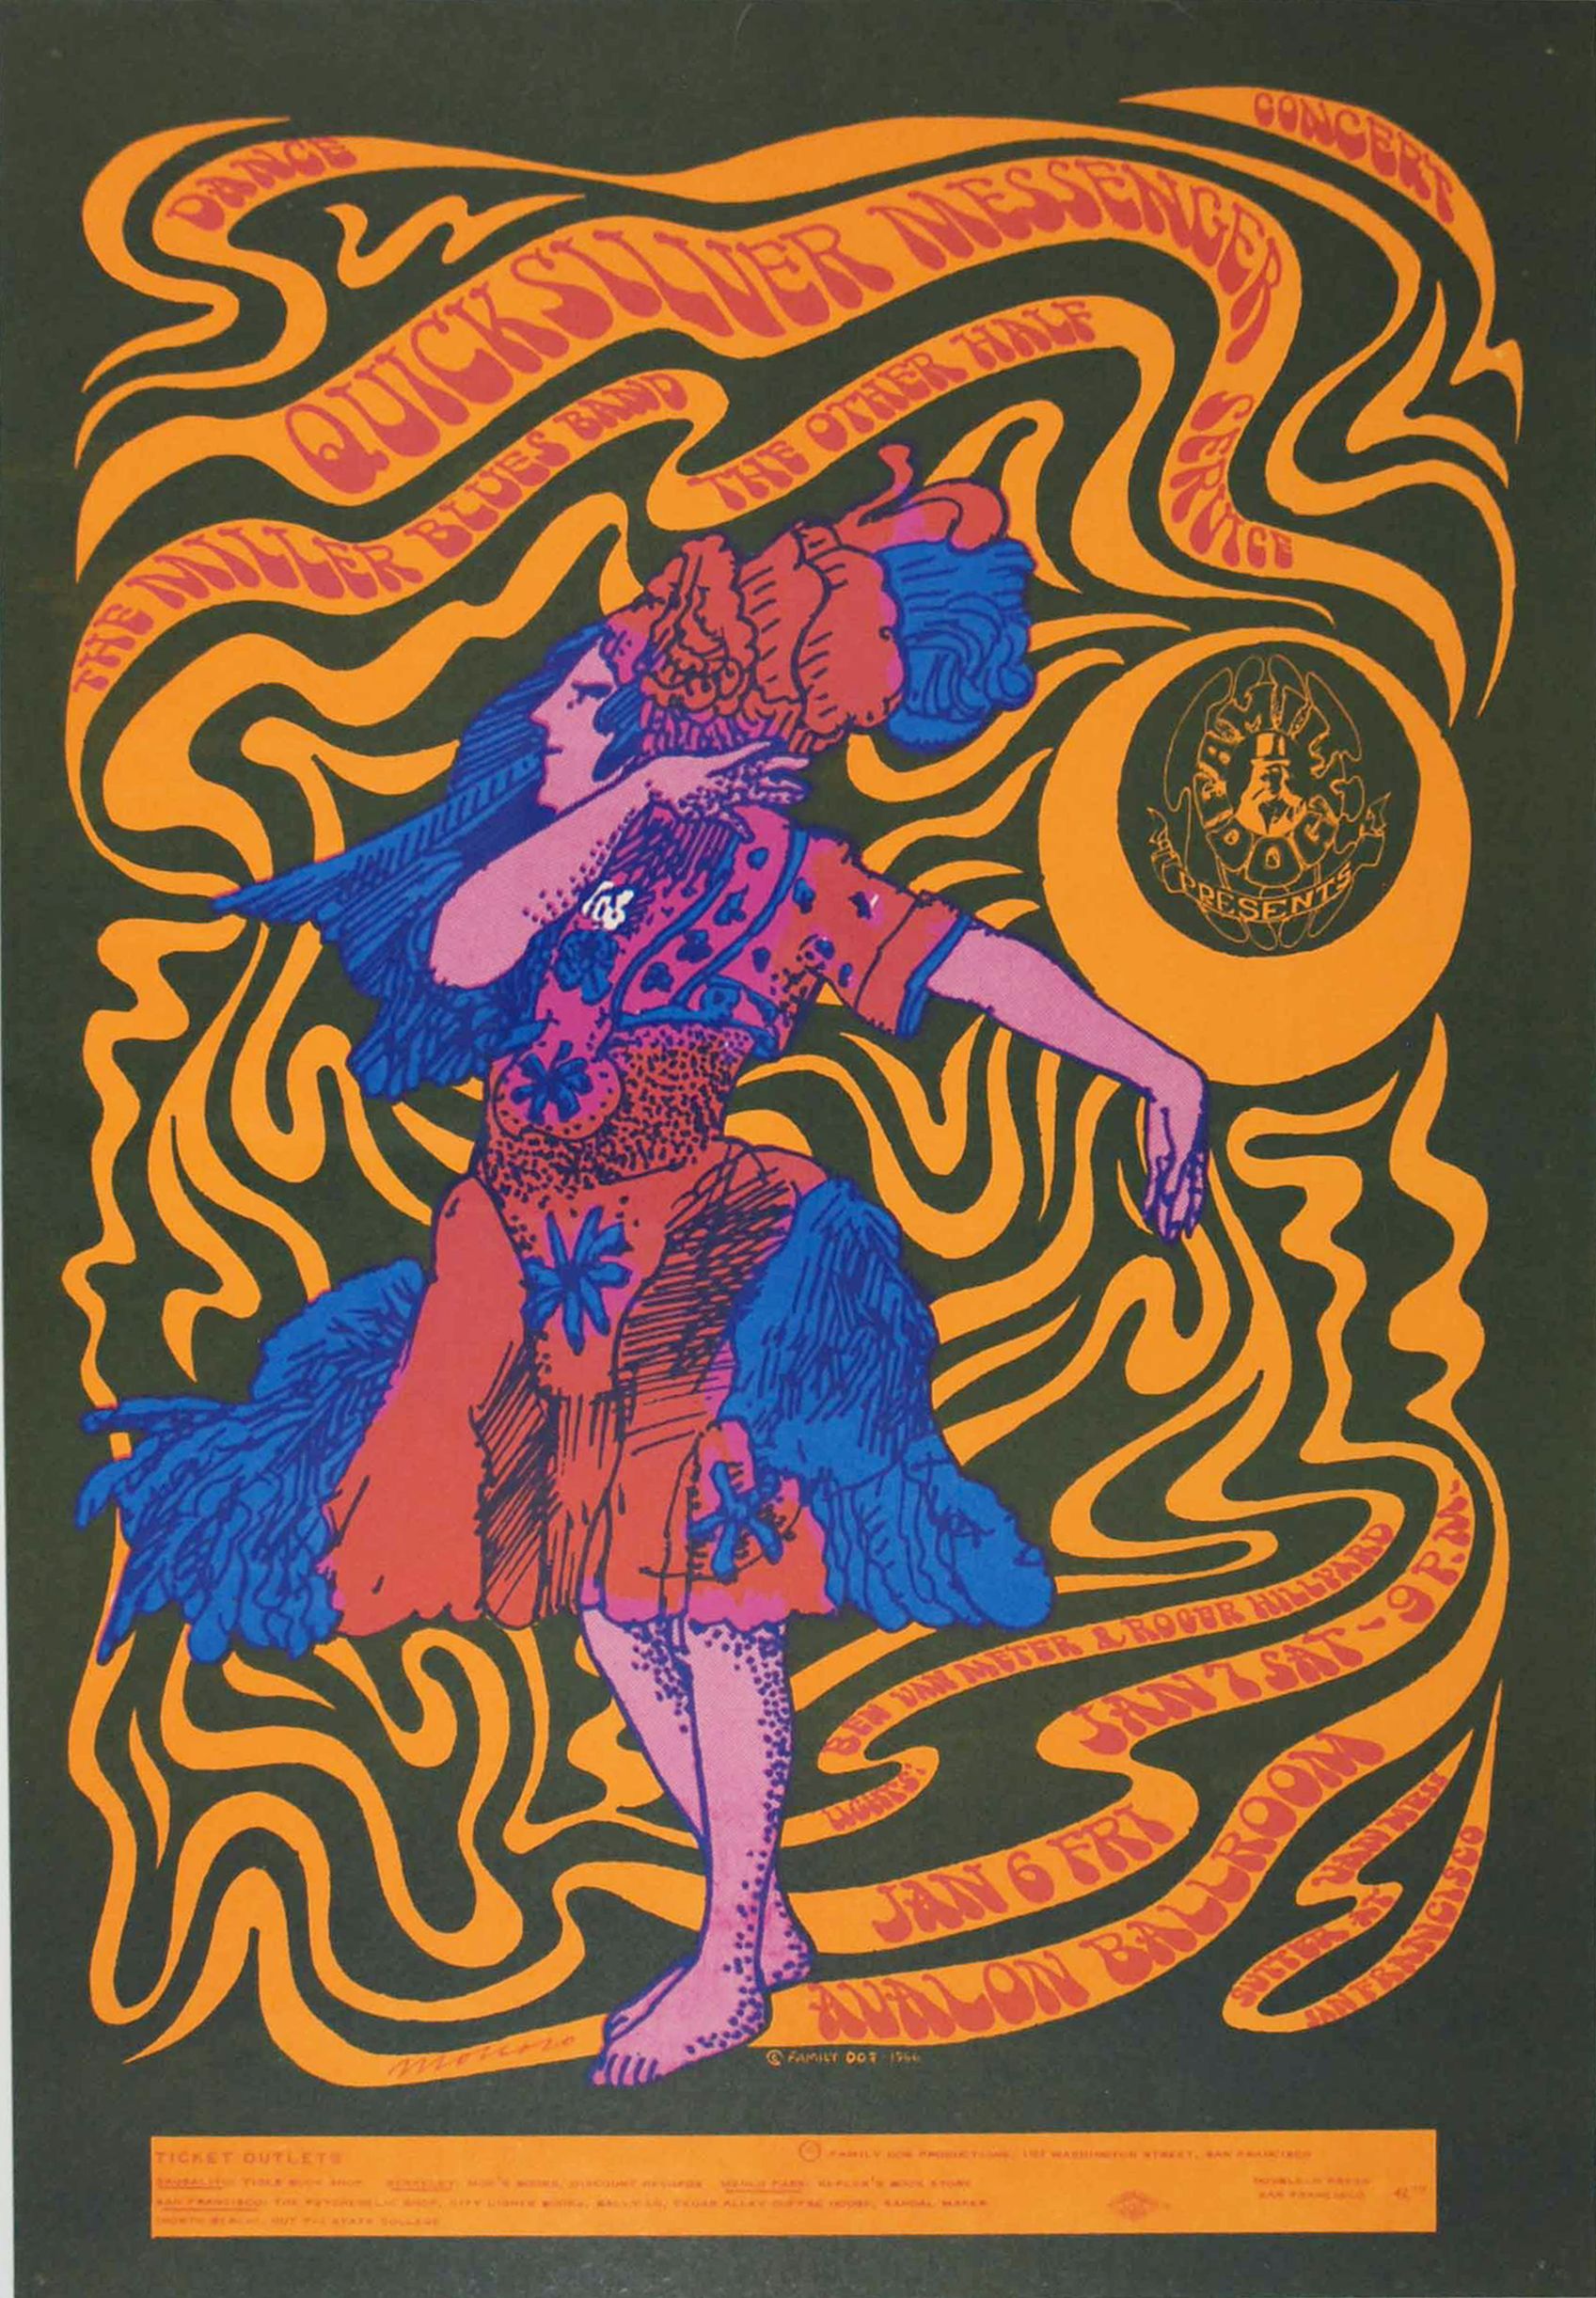 FD-42-OP-1 Concert Poster